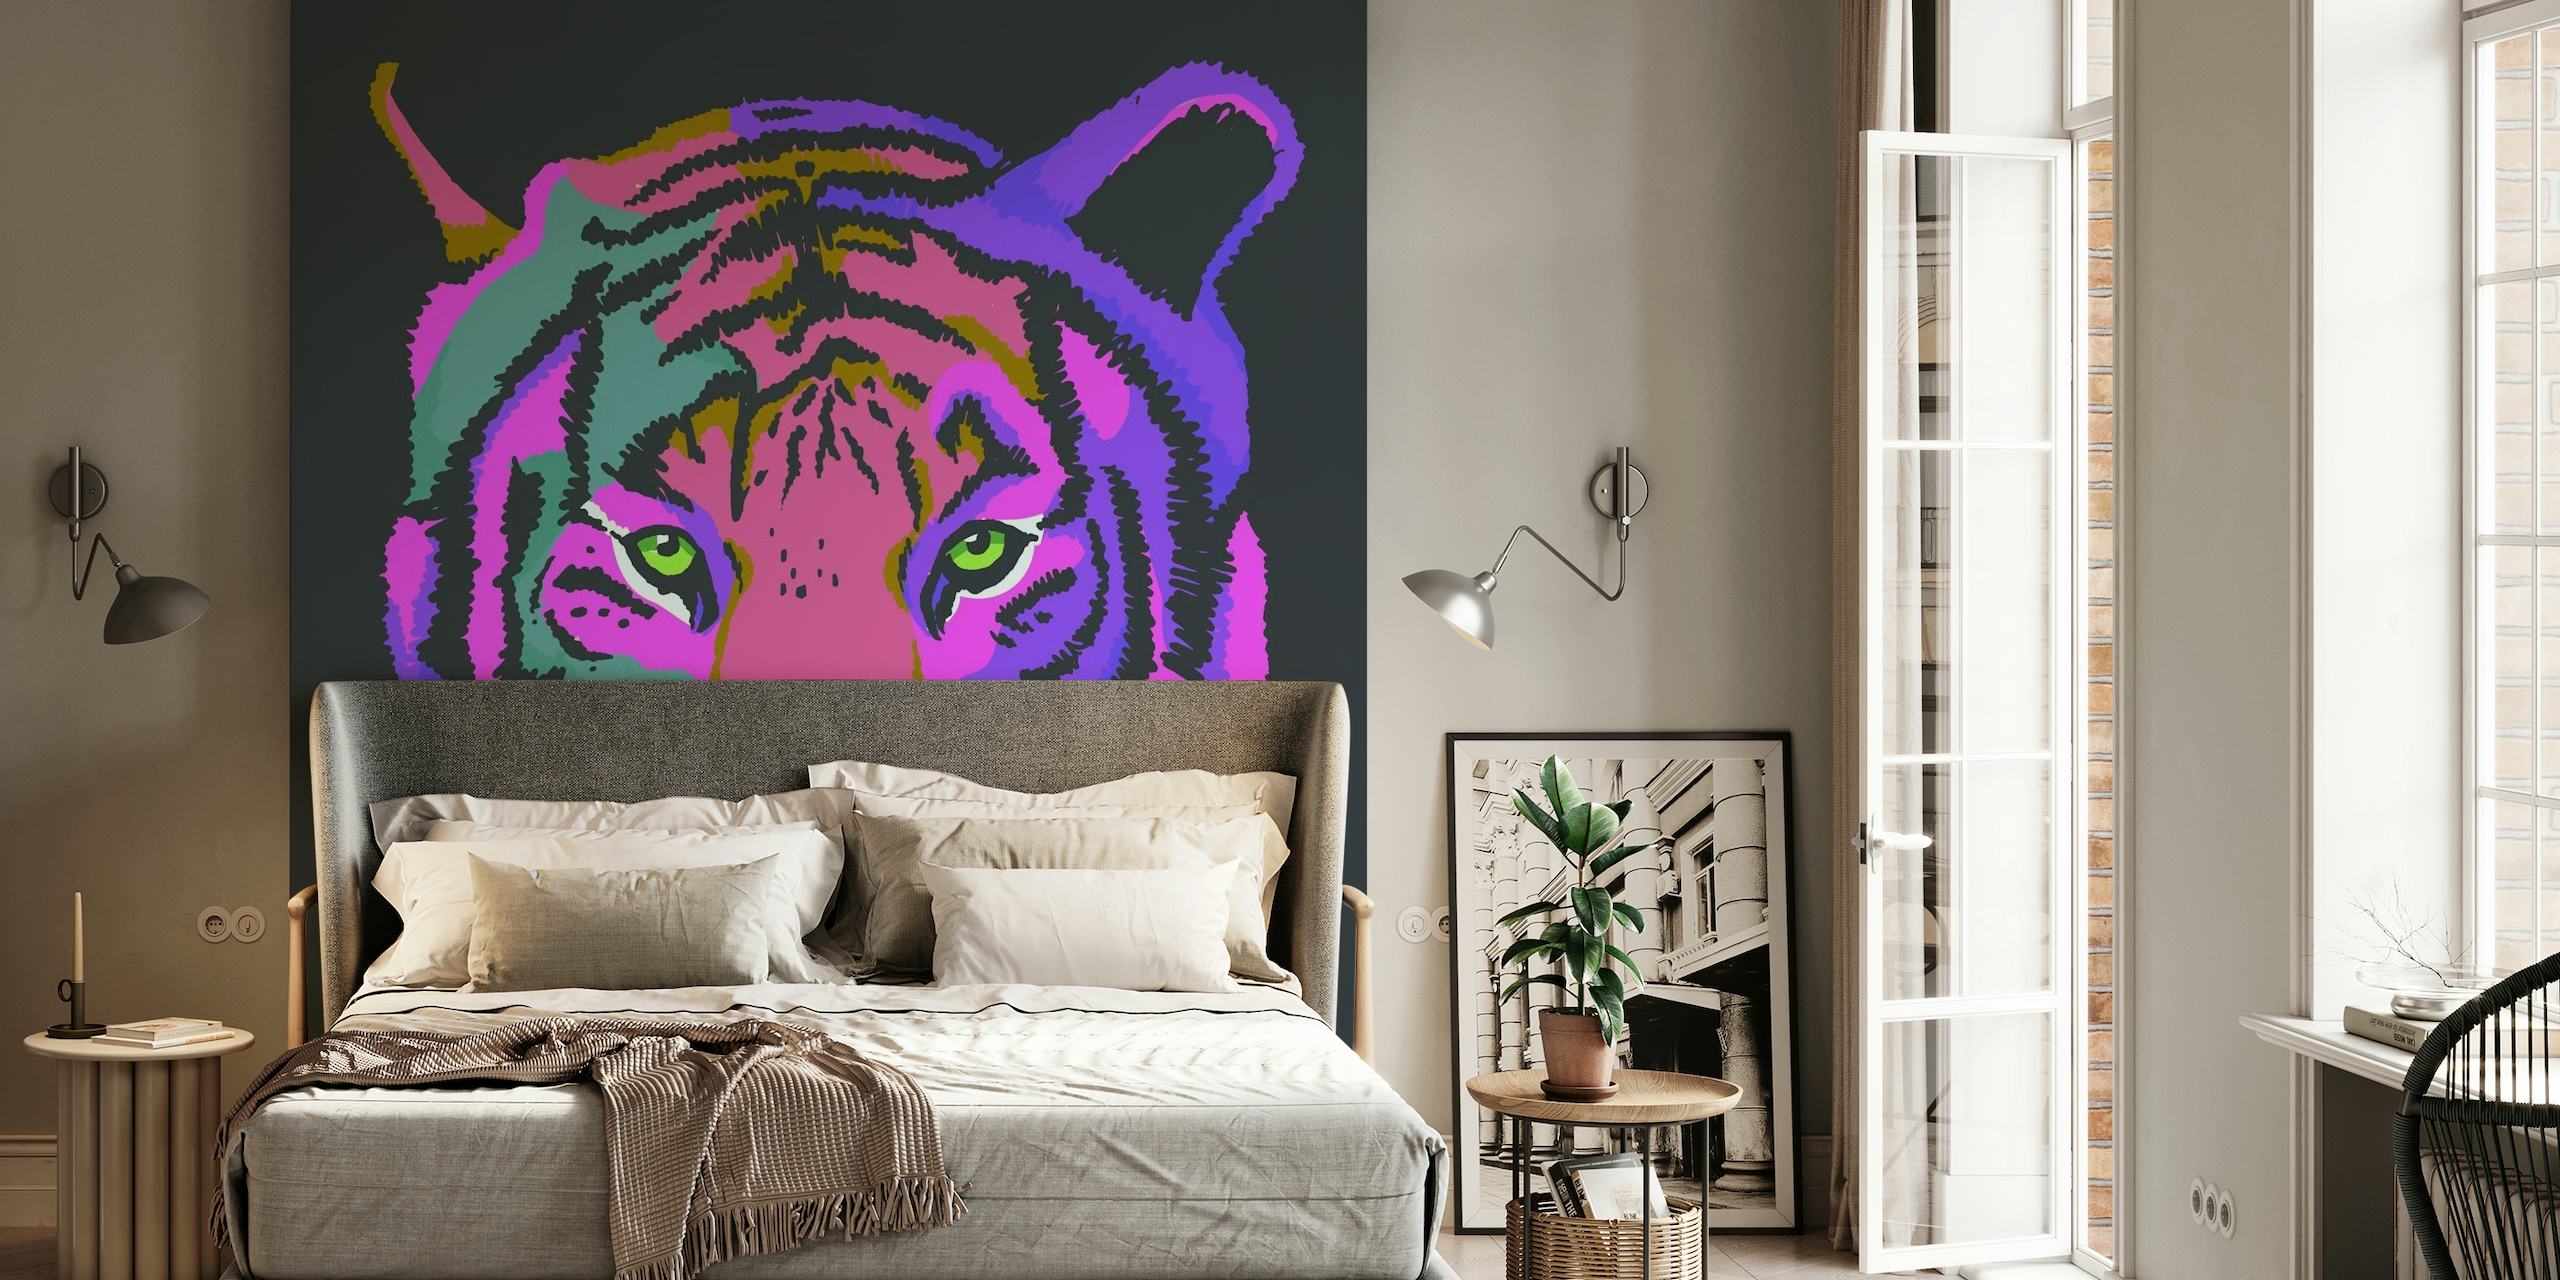 Een kleurrijke muurschildering met een gestileerde tijger in paarse en roze tinten tegen een donkere achtergrond.